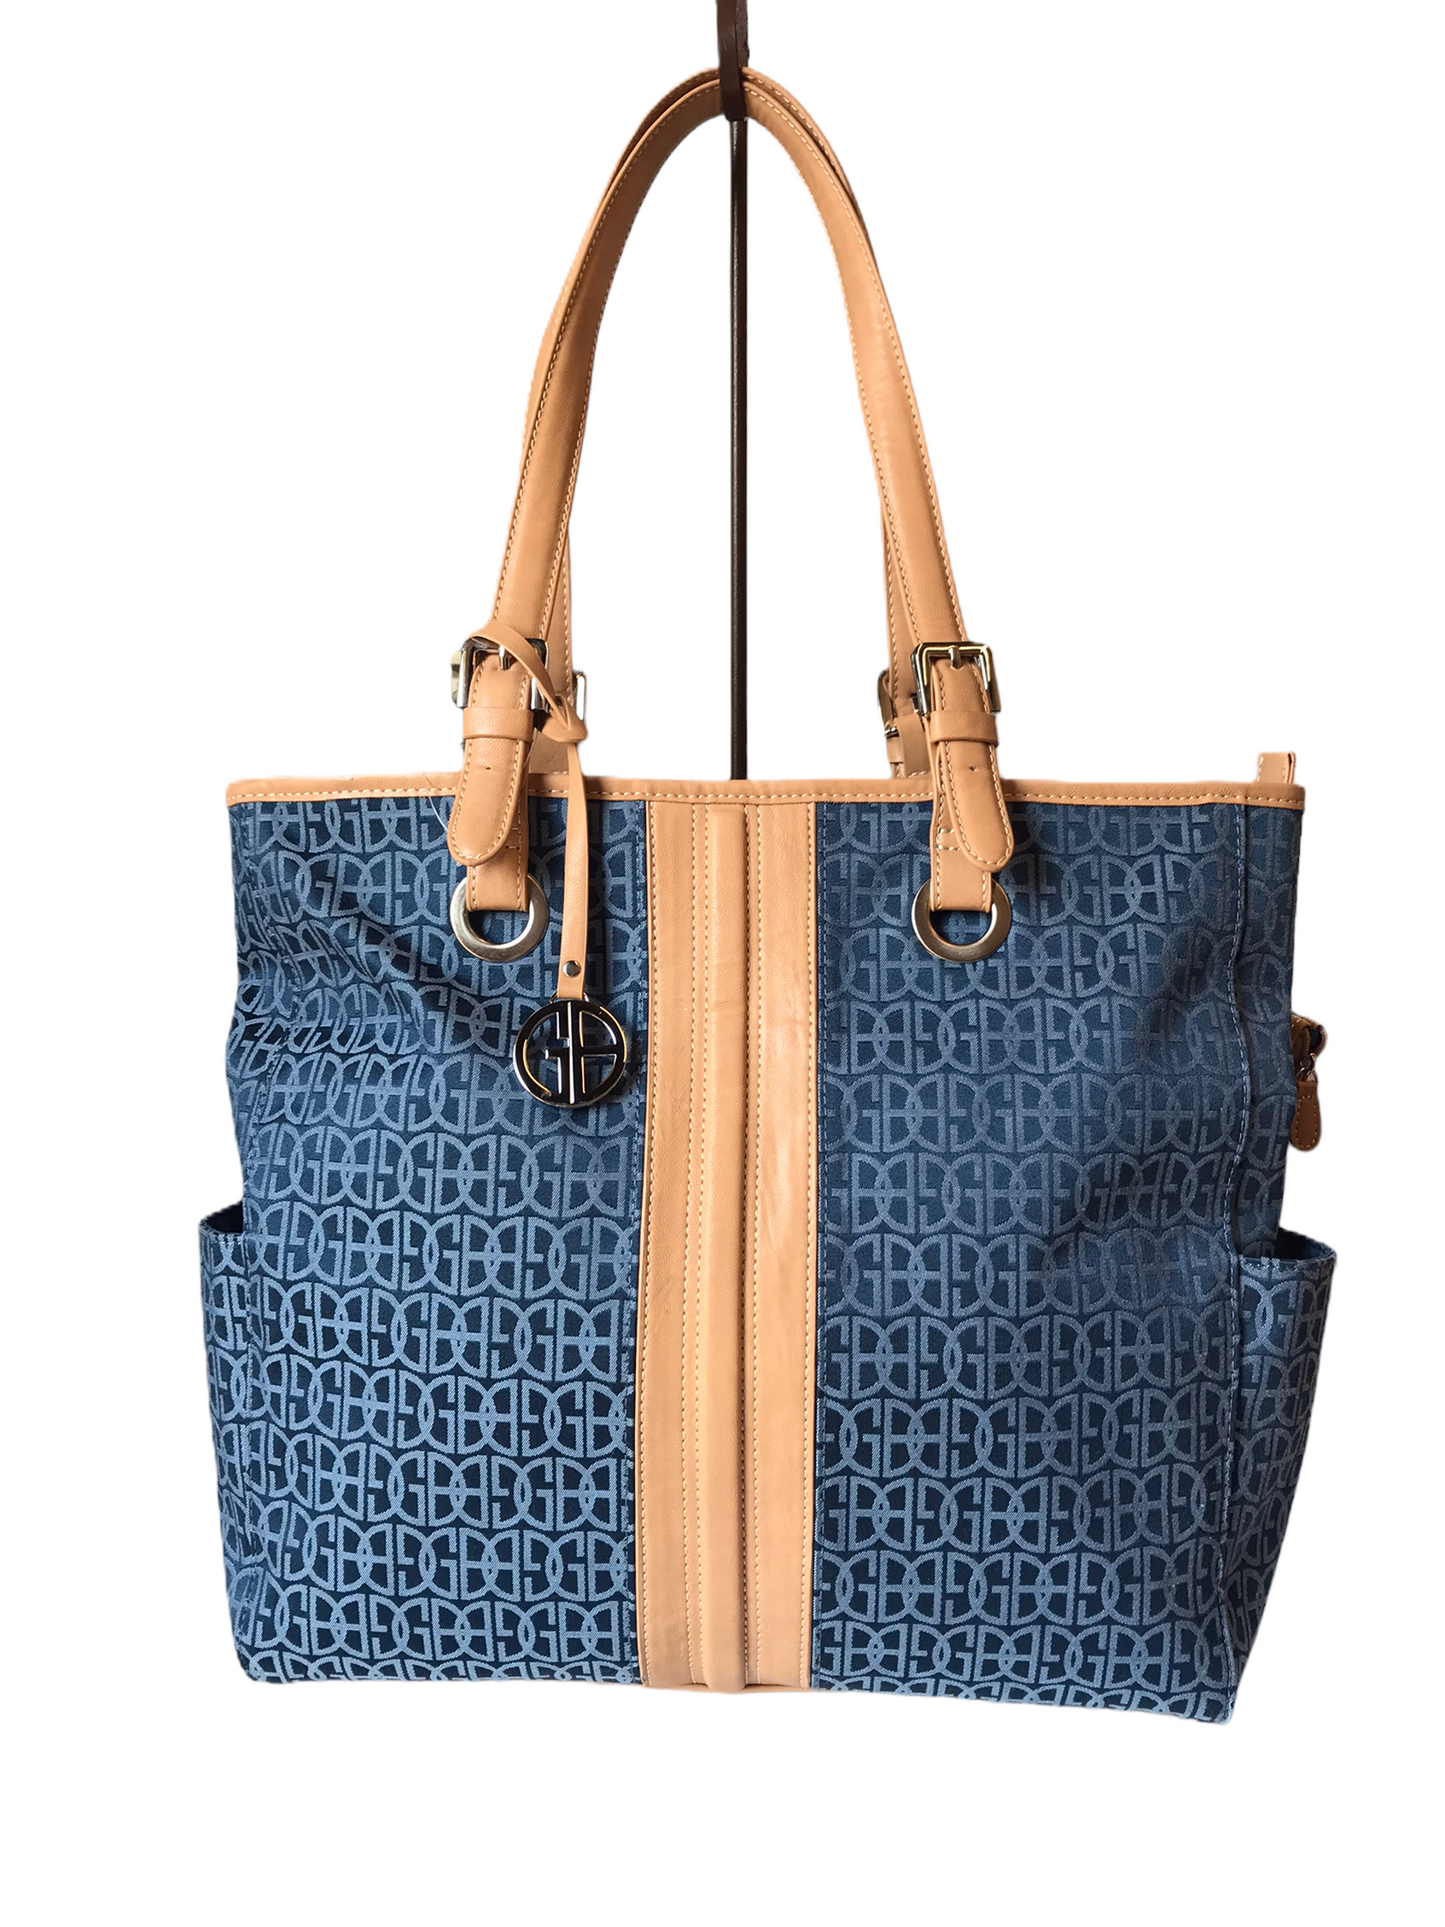 Handbag By Giani Bernini, Size: Large